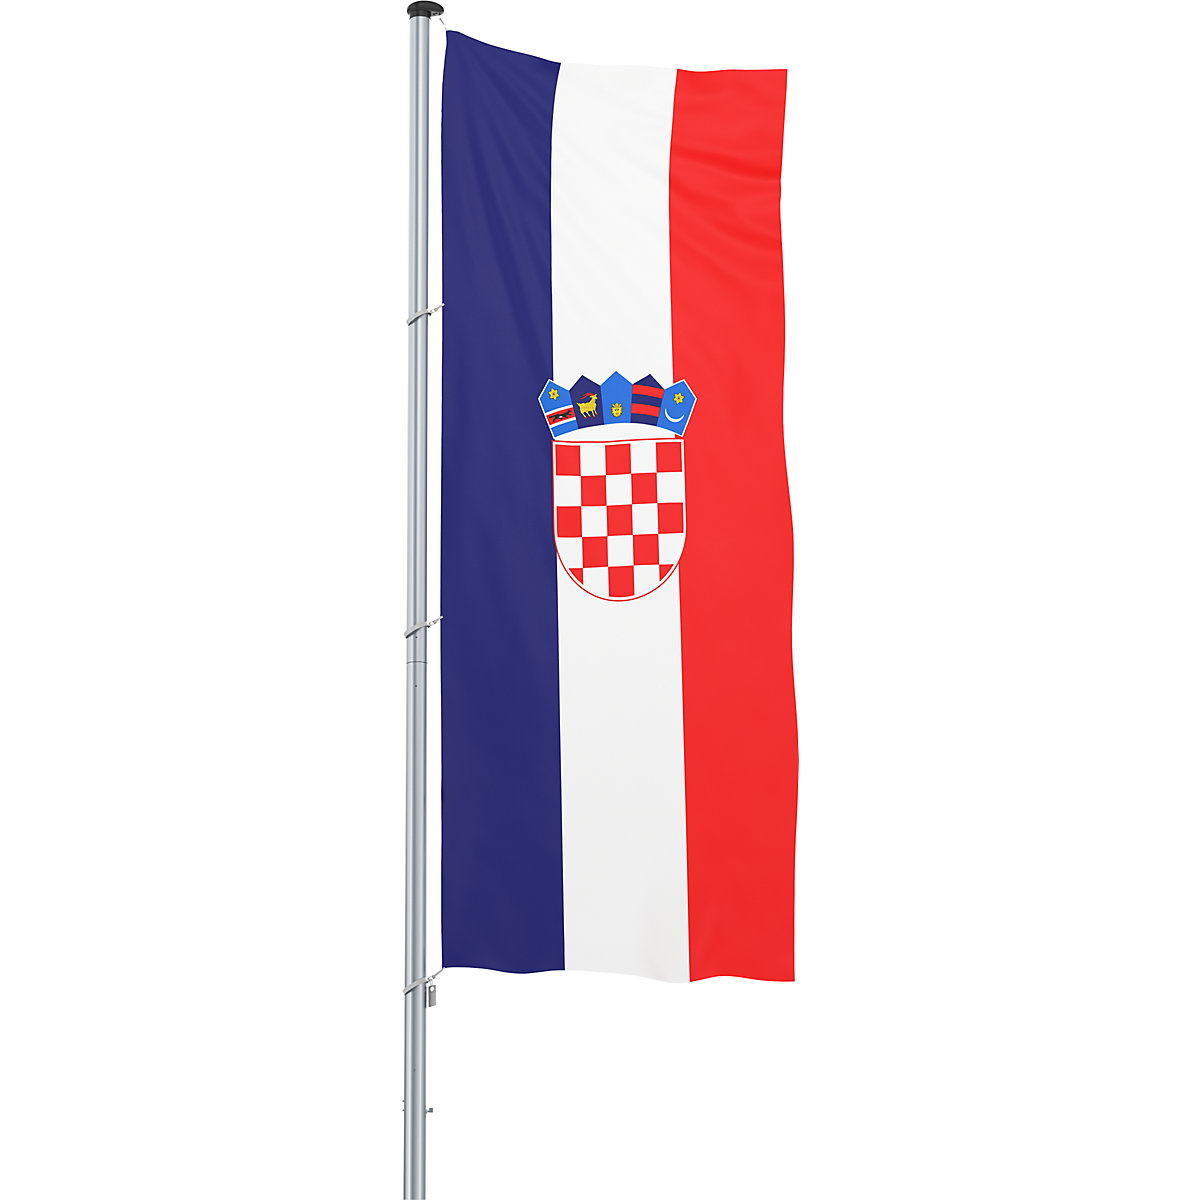 Mannus – Bandera para izar/bandera del país, formato 1,2 x 3 m, Croacia